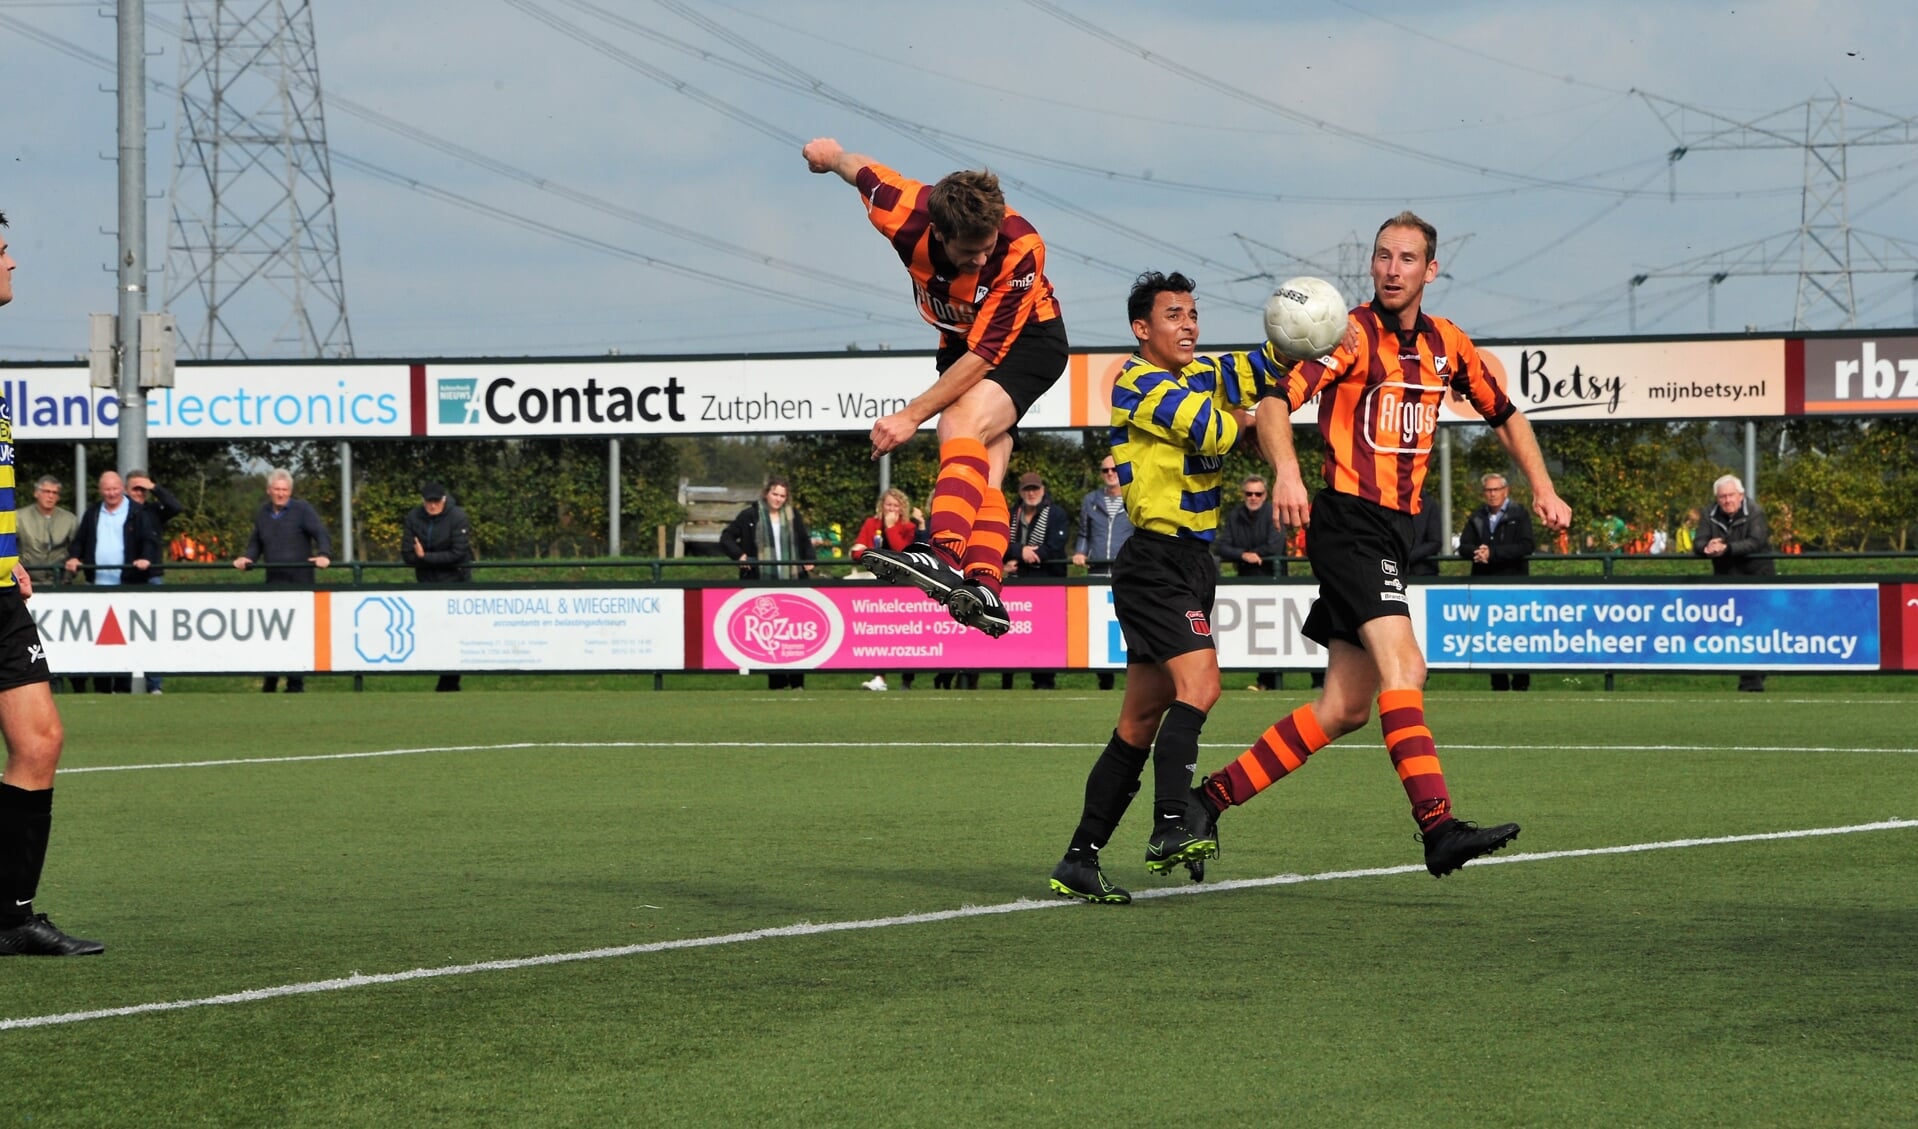 Joost van Vliet van FC Zutphen scoort hier een doelpunt met een kopbal. Foto: Hans ten Brinke